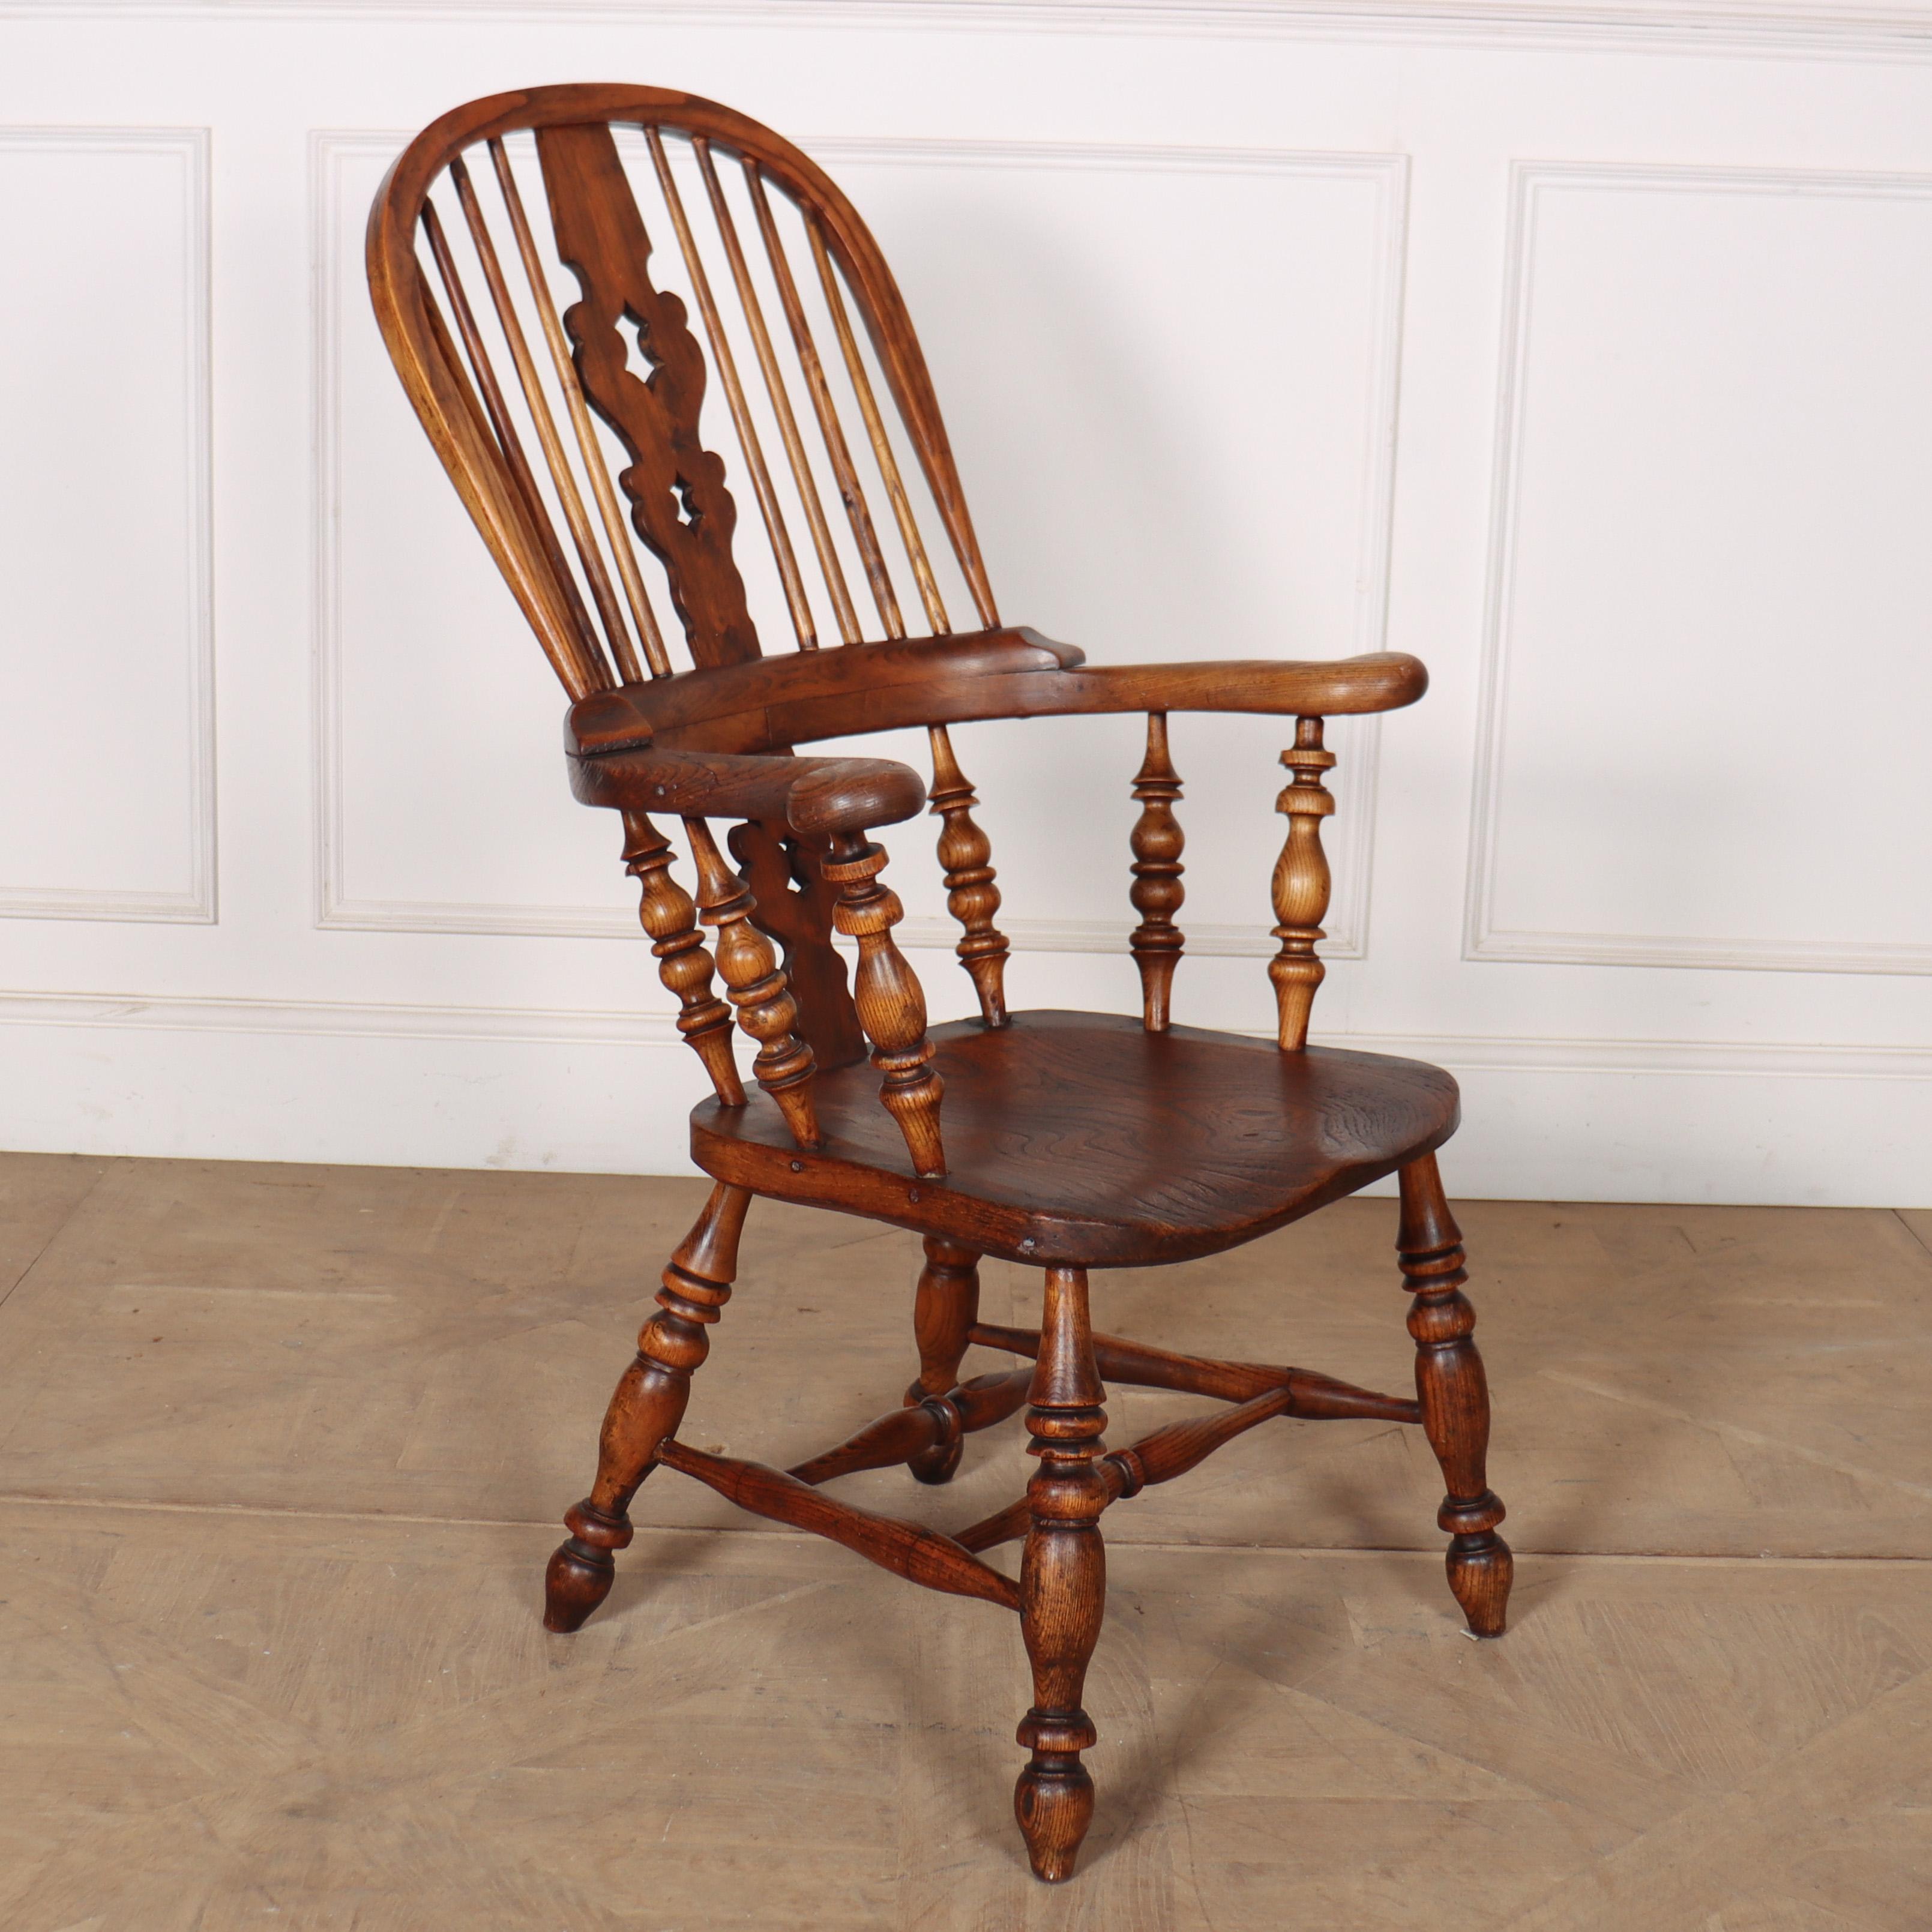 Breitarmiger Windsor-Stuhl aus Yorkshire, 19. Jahrhundert. 1850.

Referenz: 8129

Abmessungen
26 Zoll (66 cm) breit
28,5 Zoll (72 cm) tief
42,5 Zoll (108 cm) hoch